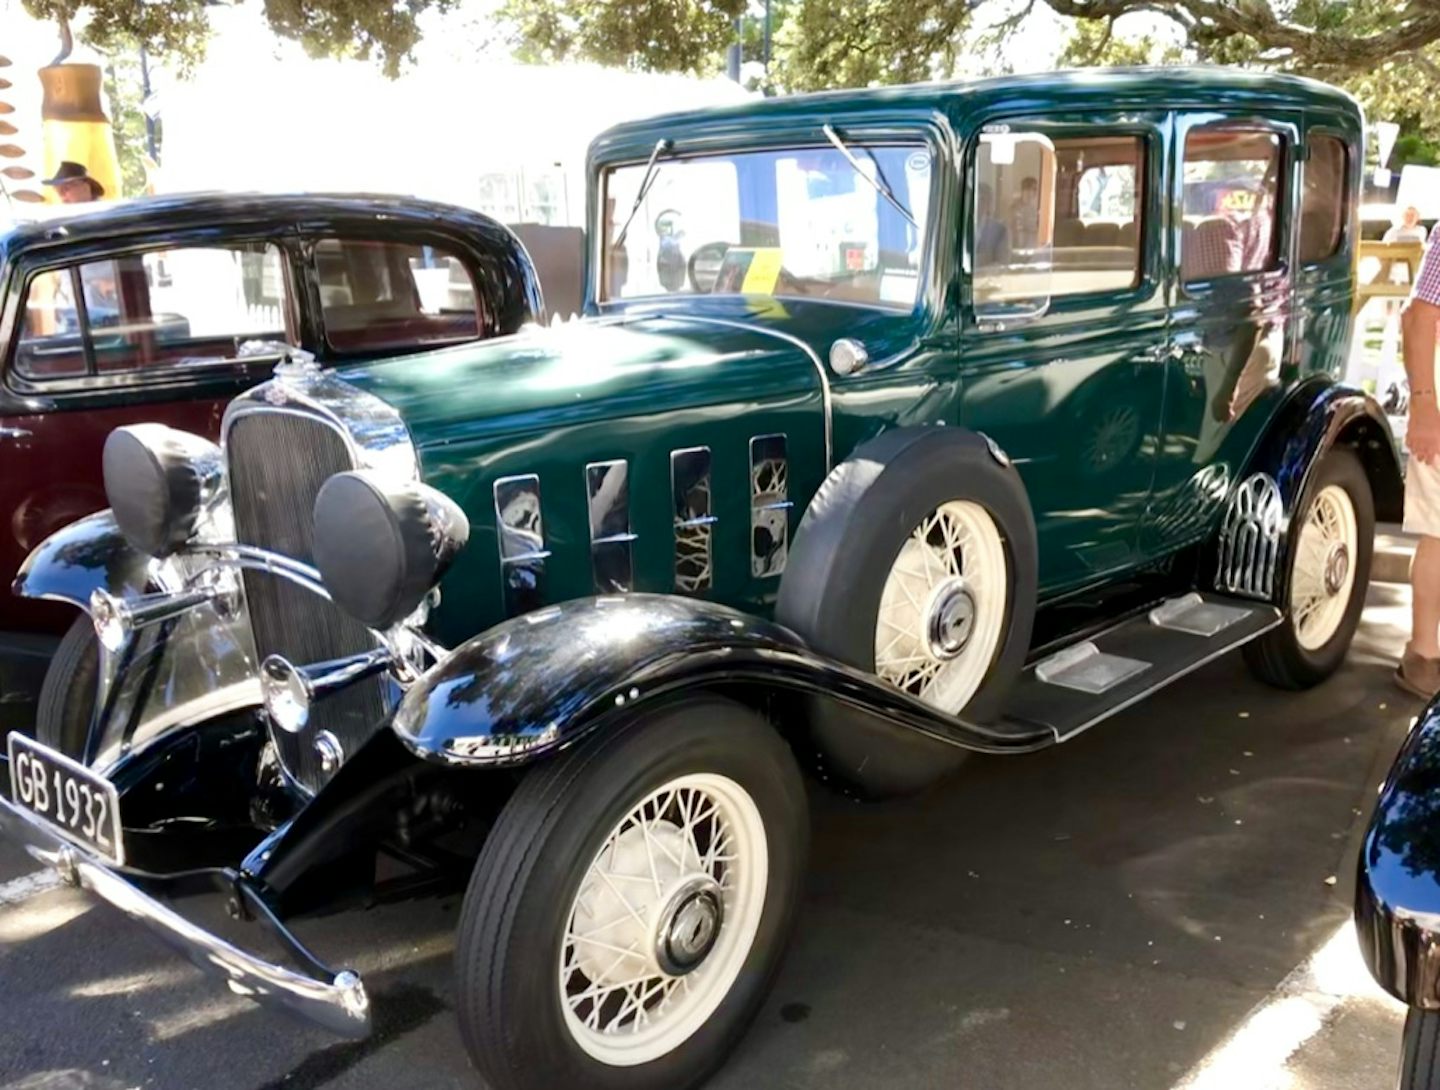 Antique car at Art Deco Festiva;